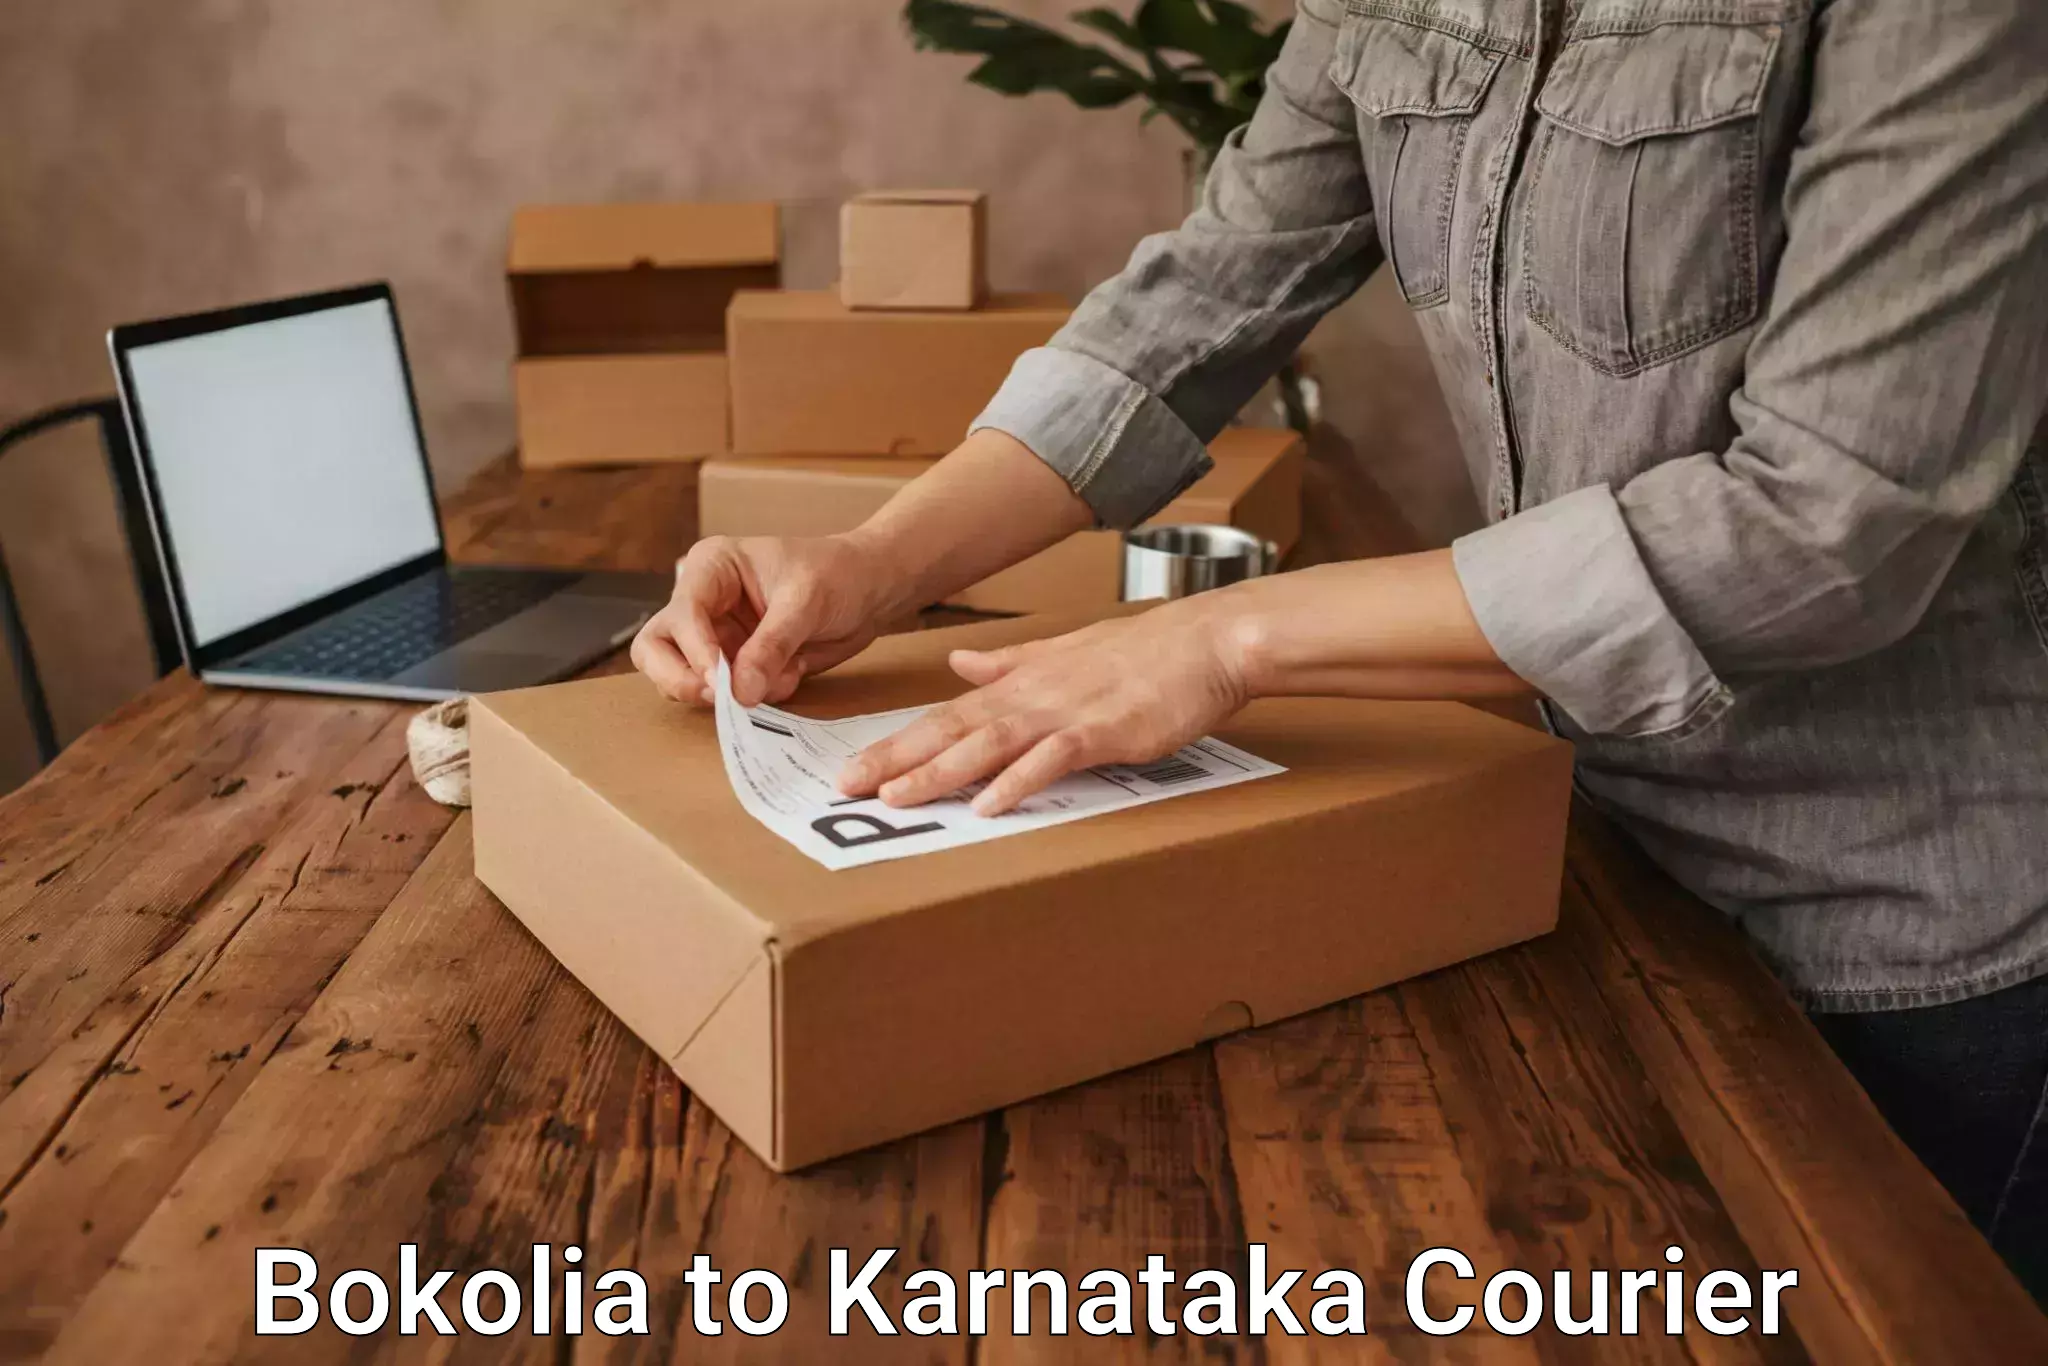 Easy return solutions Bokolia to Karnataka